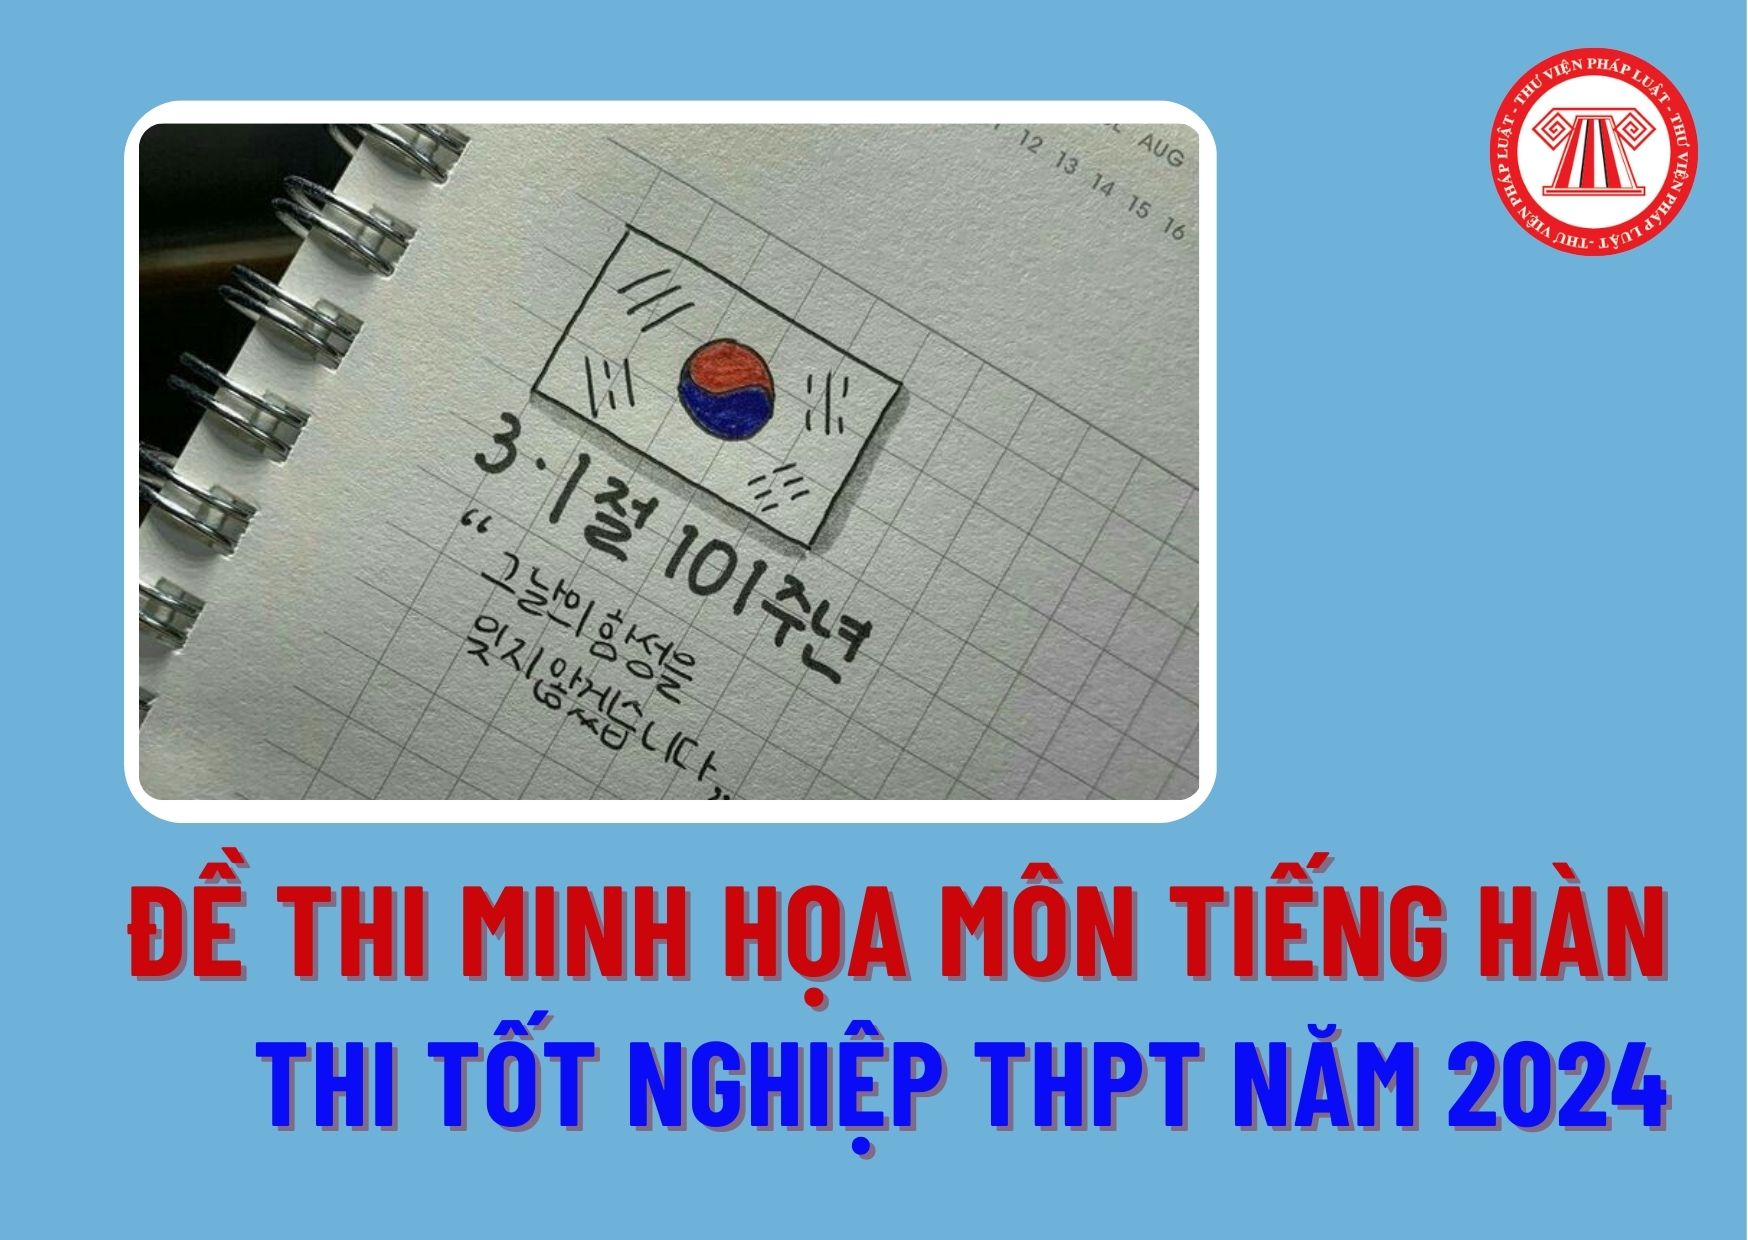 Đề thi minh họa thi tốt nghiệp THPT tiếng Hàn năm 2024 ra sao? Thí sinh thi tốt nghiệp THPT 2024 bao nhiêu điểm là đậu?